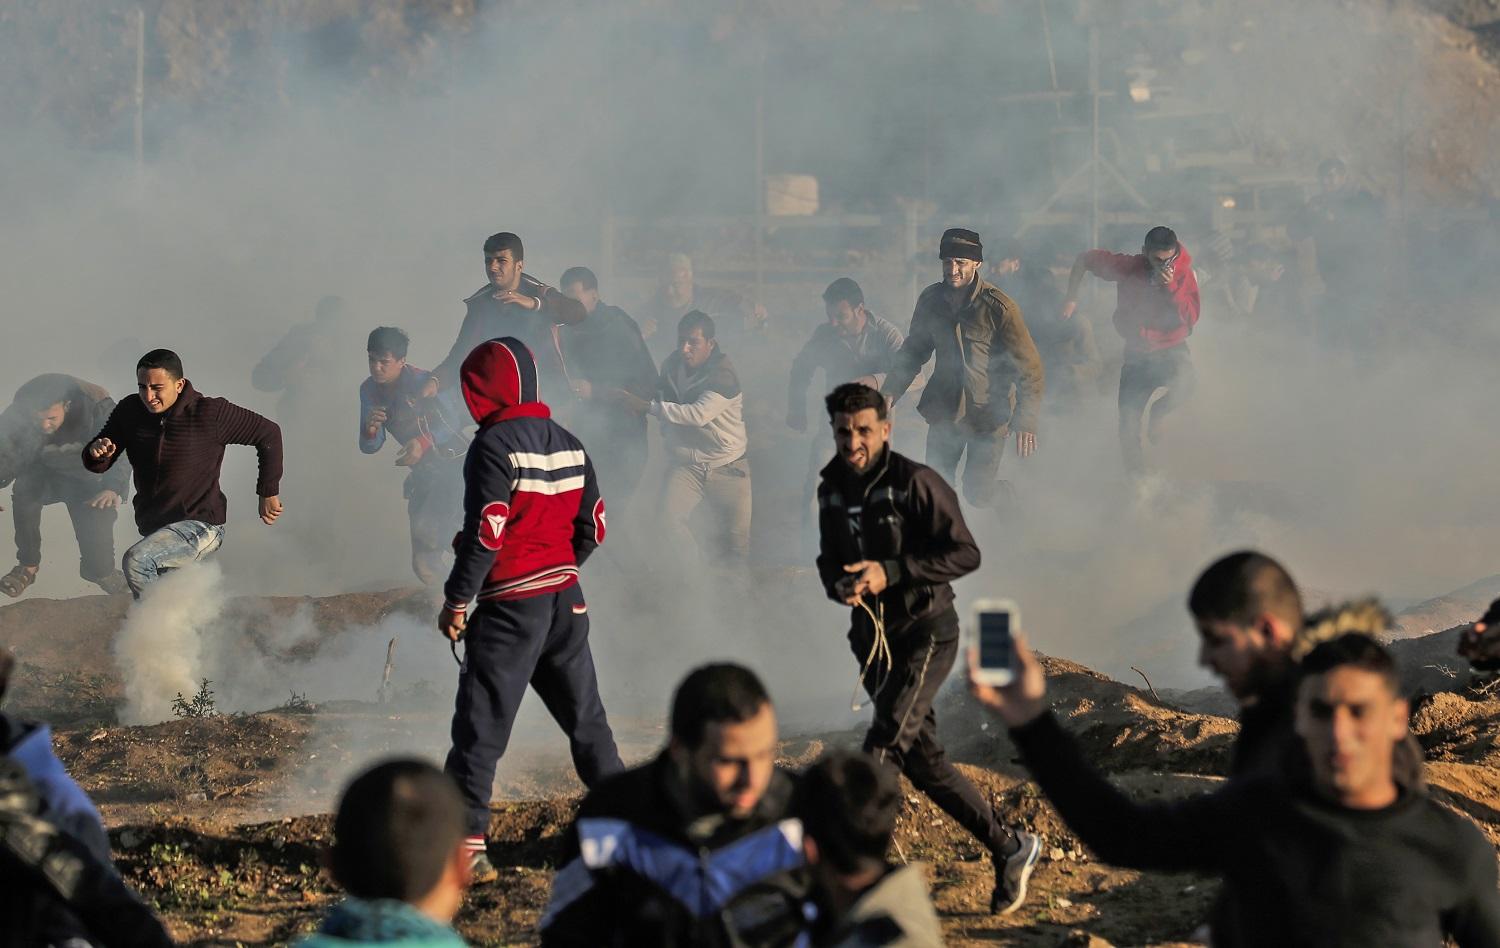 فلسطينيون مشاركون في مسيرات العودة يركضون مبتعدين عن قنابل غاز مسيل للدموع أطلقتها قوات الجيش الإسرائيلي، 11 يناير 2019. أ ف ب  